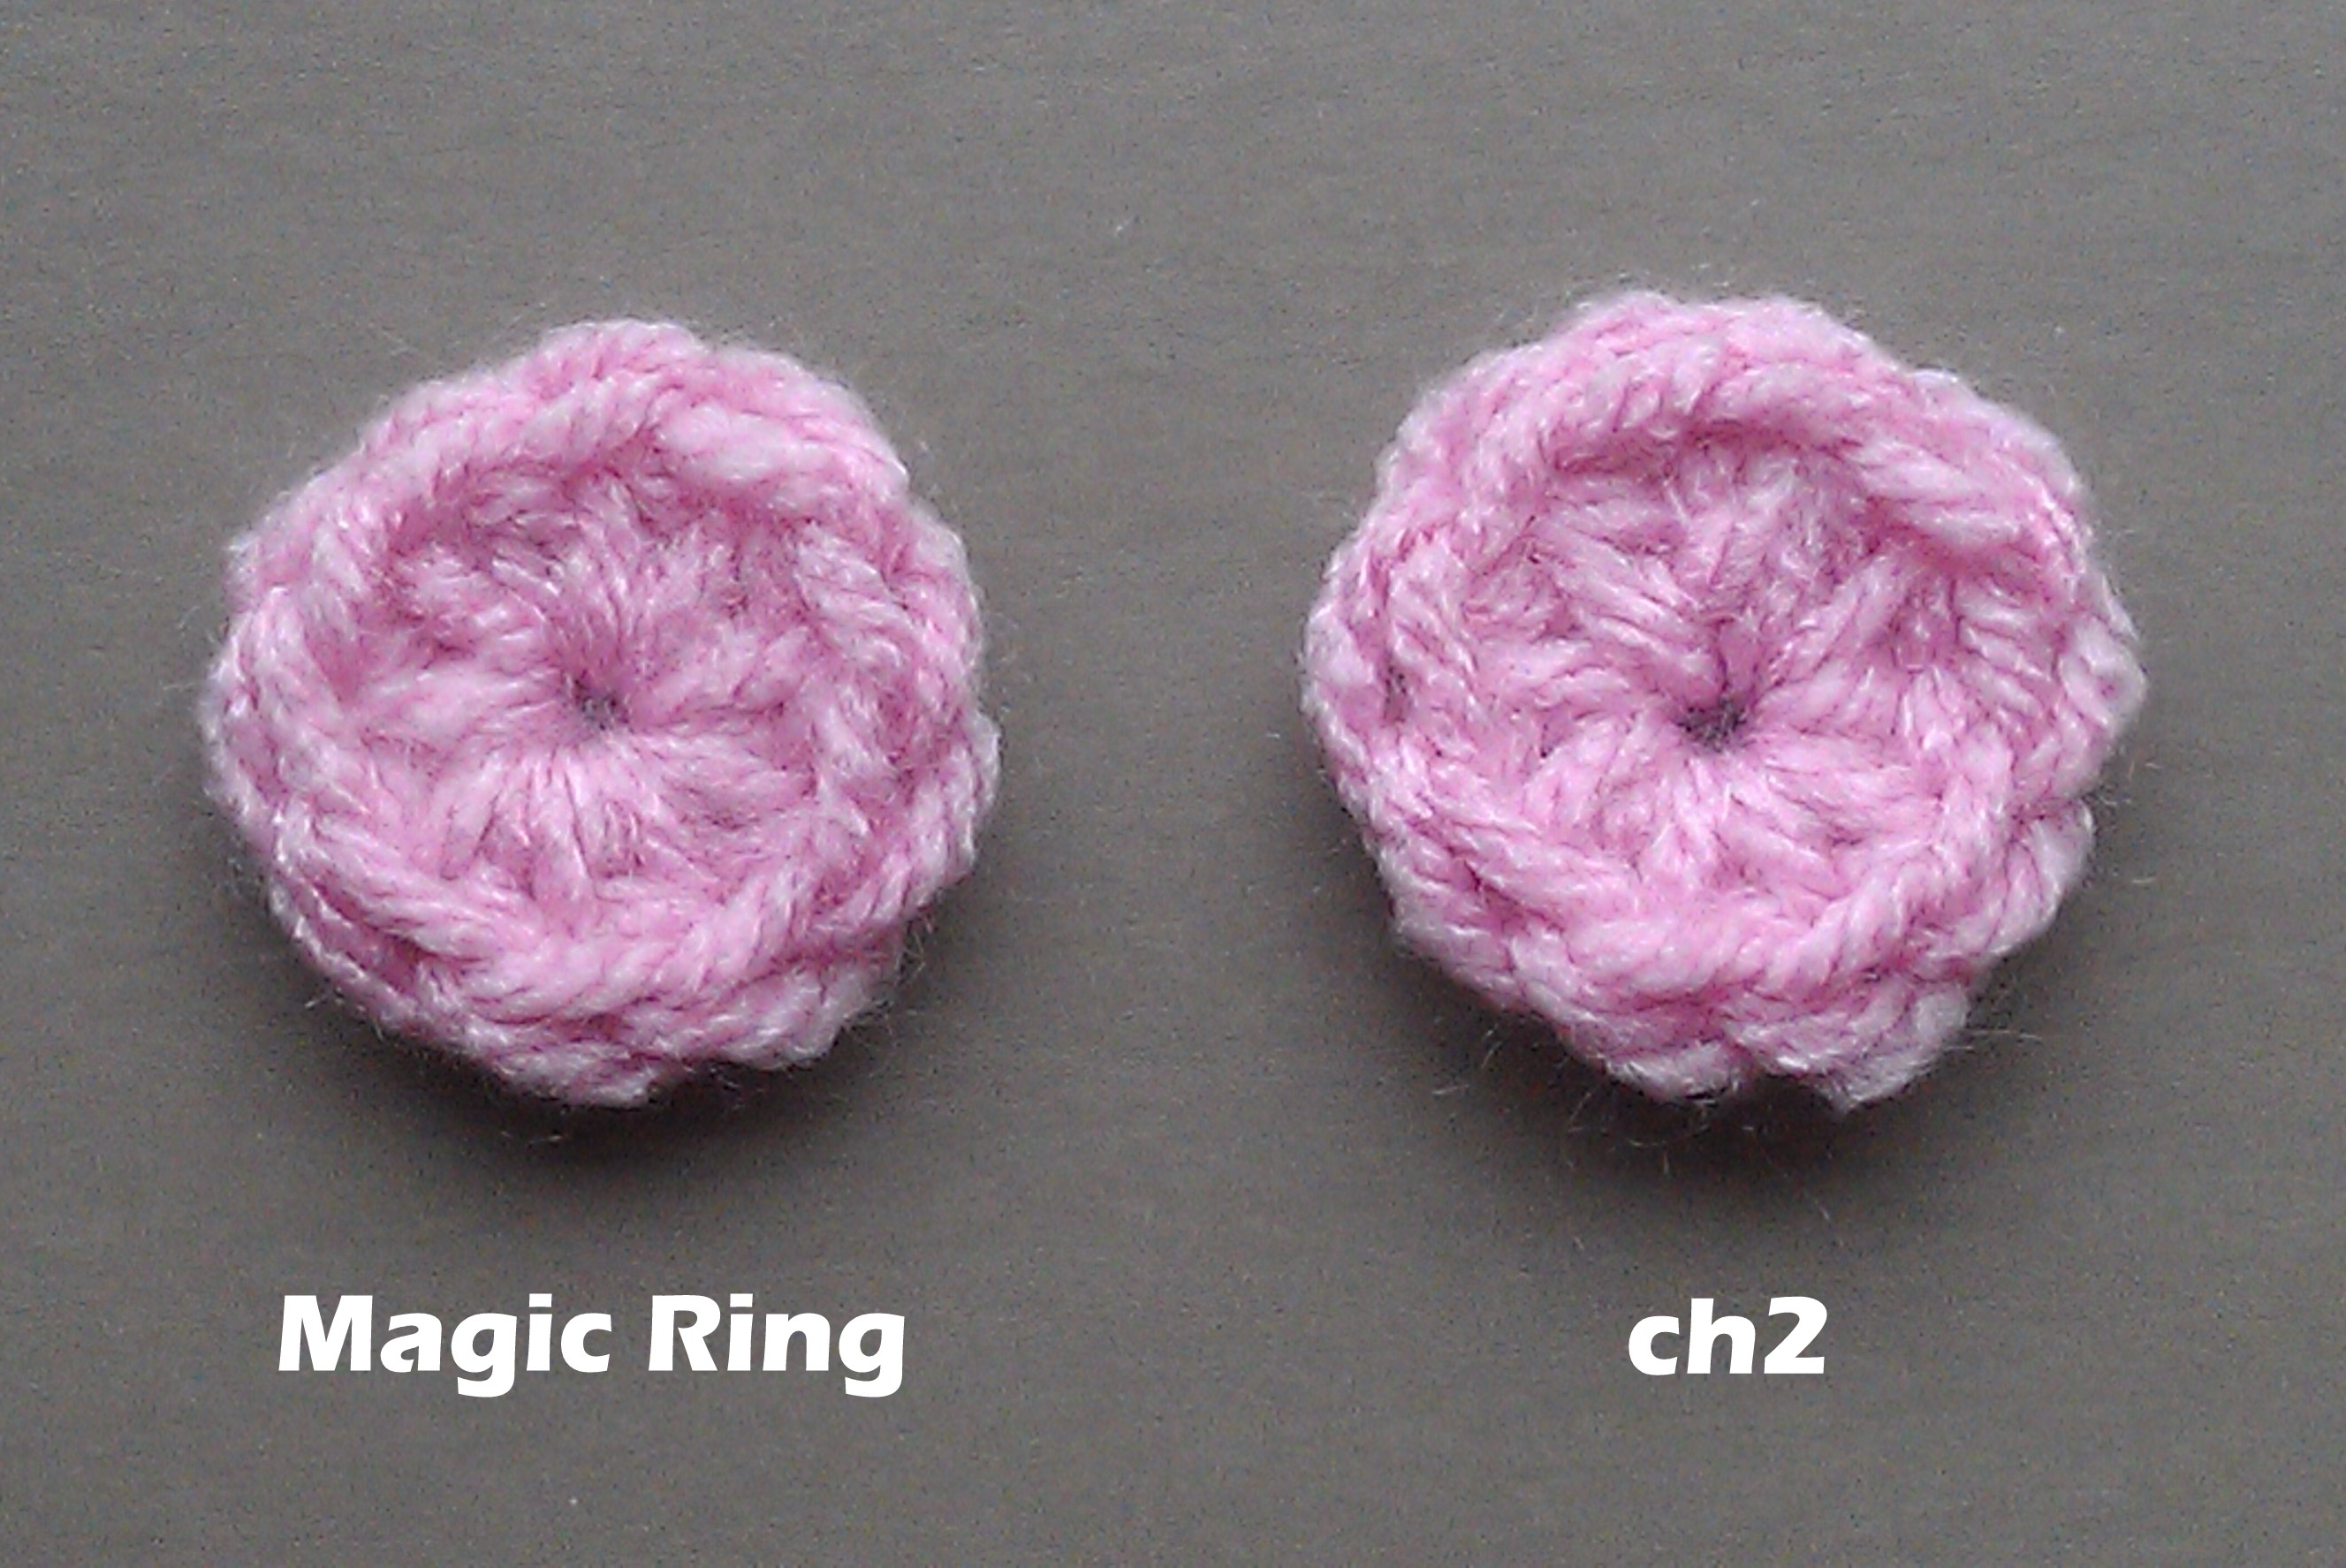 magic ring vs. ch2